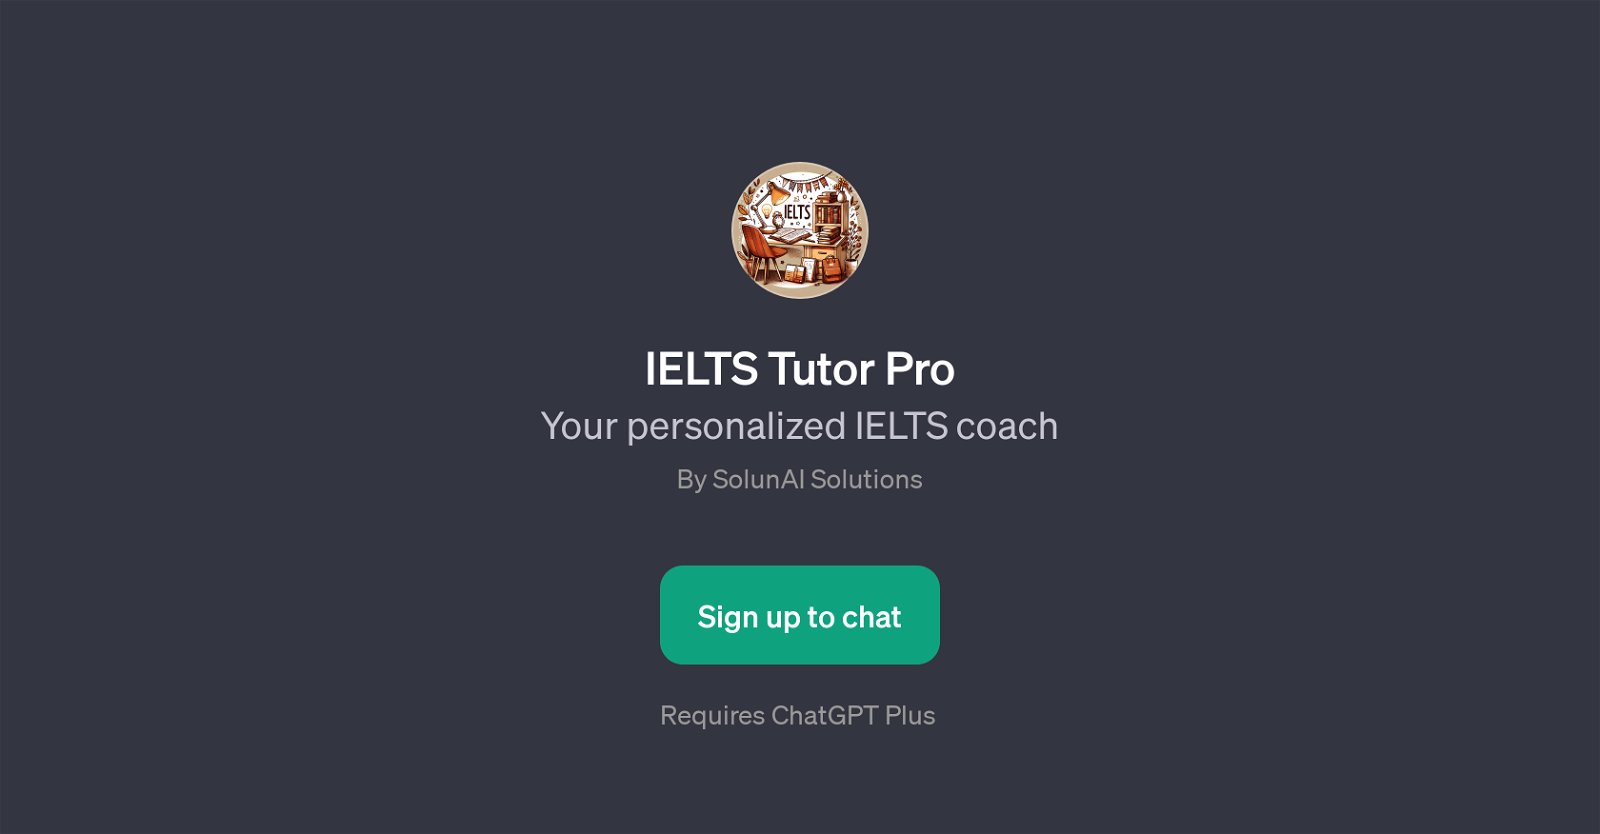 IELTS Tutor Pro website